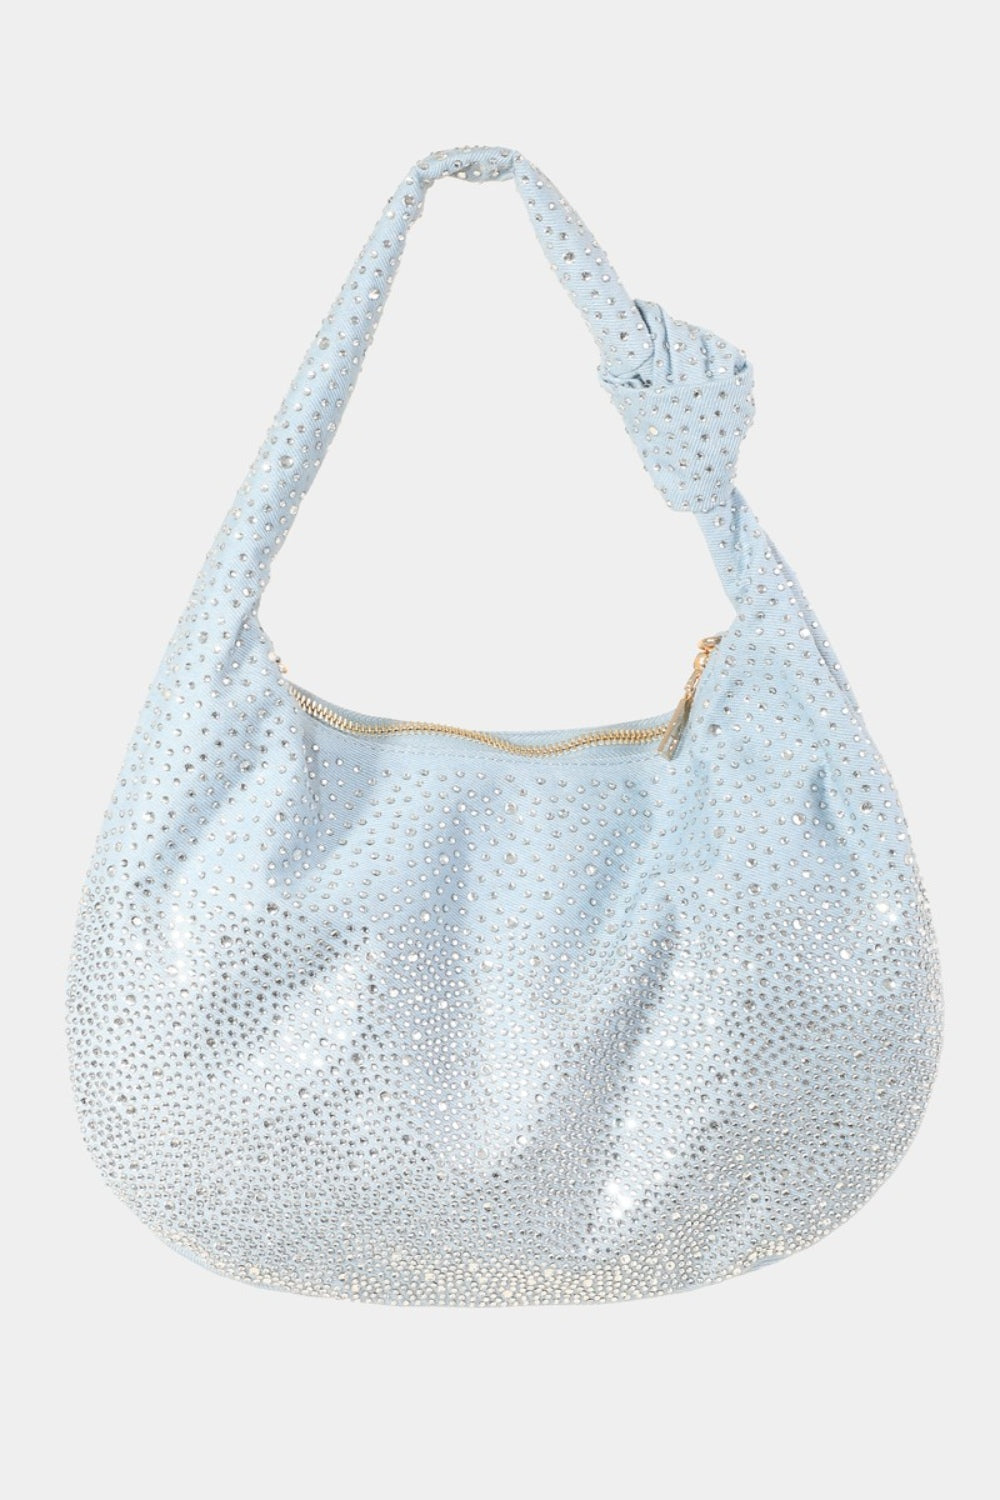 TEEK - Rhinestone Studded Handbag BAG TEEK Trend Light One Size 